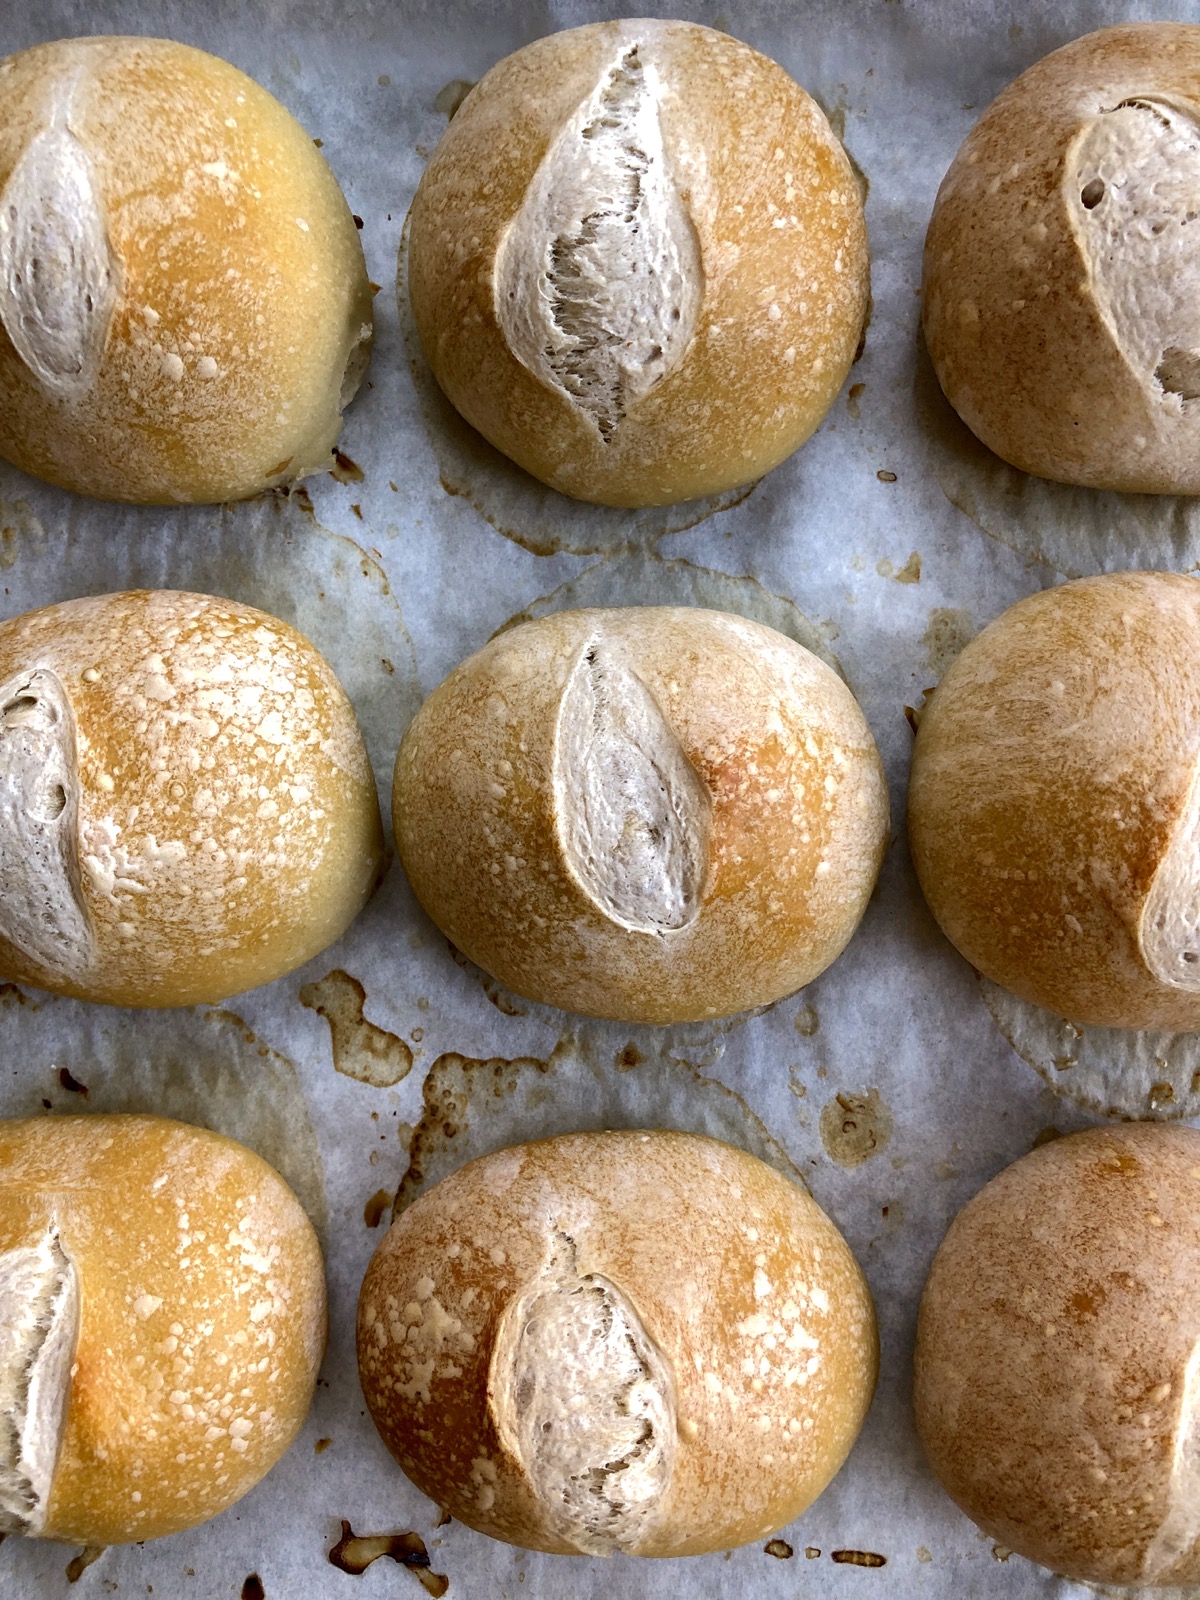 Crusty European-style hard rolls on a baking sheet.